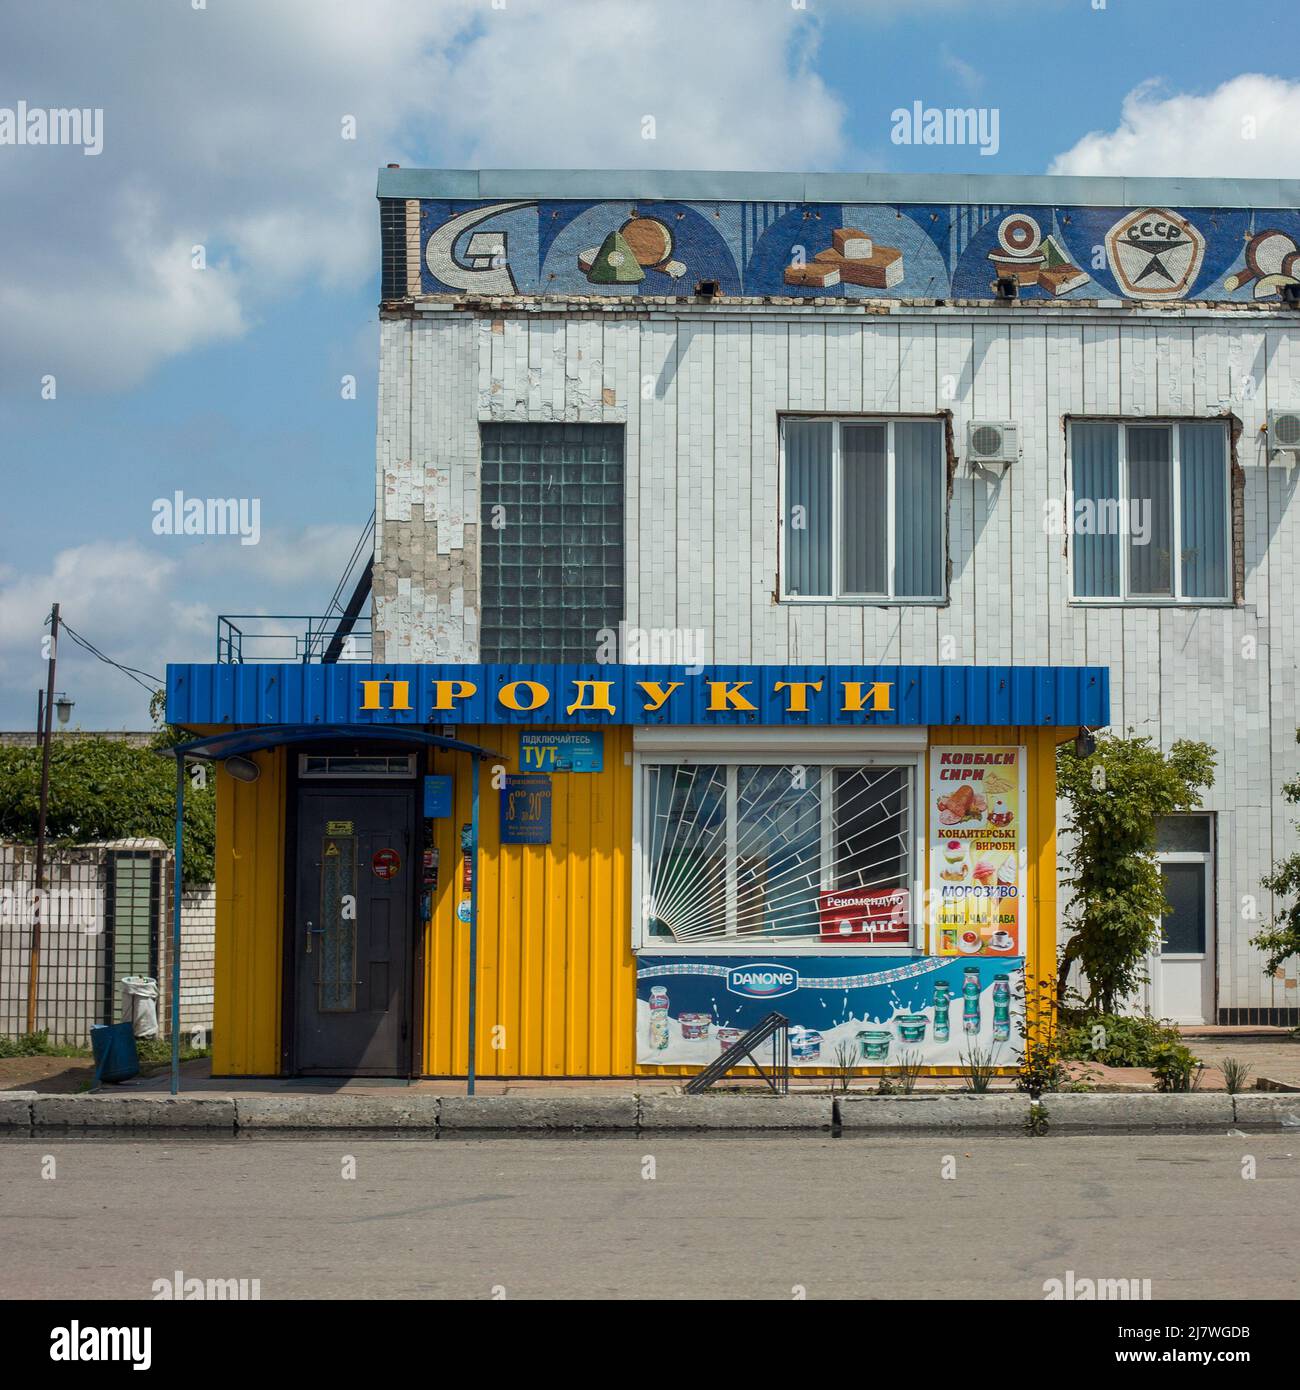 Michael Bunel / le Pictorium - i colori dell'Ucraina - 10/05/2014 - Ucraina / Donbass / Odessa - una chiesa con i colori della bandiera Ucraina Foto Stock